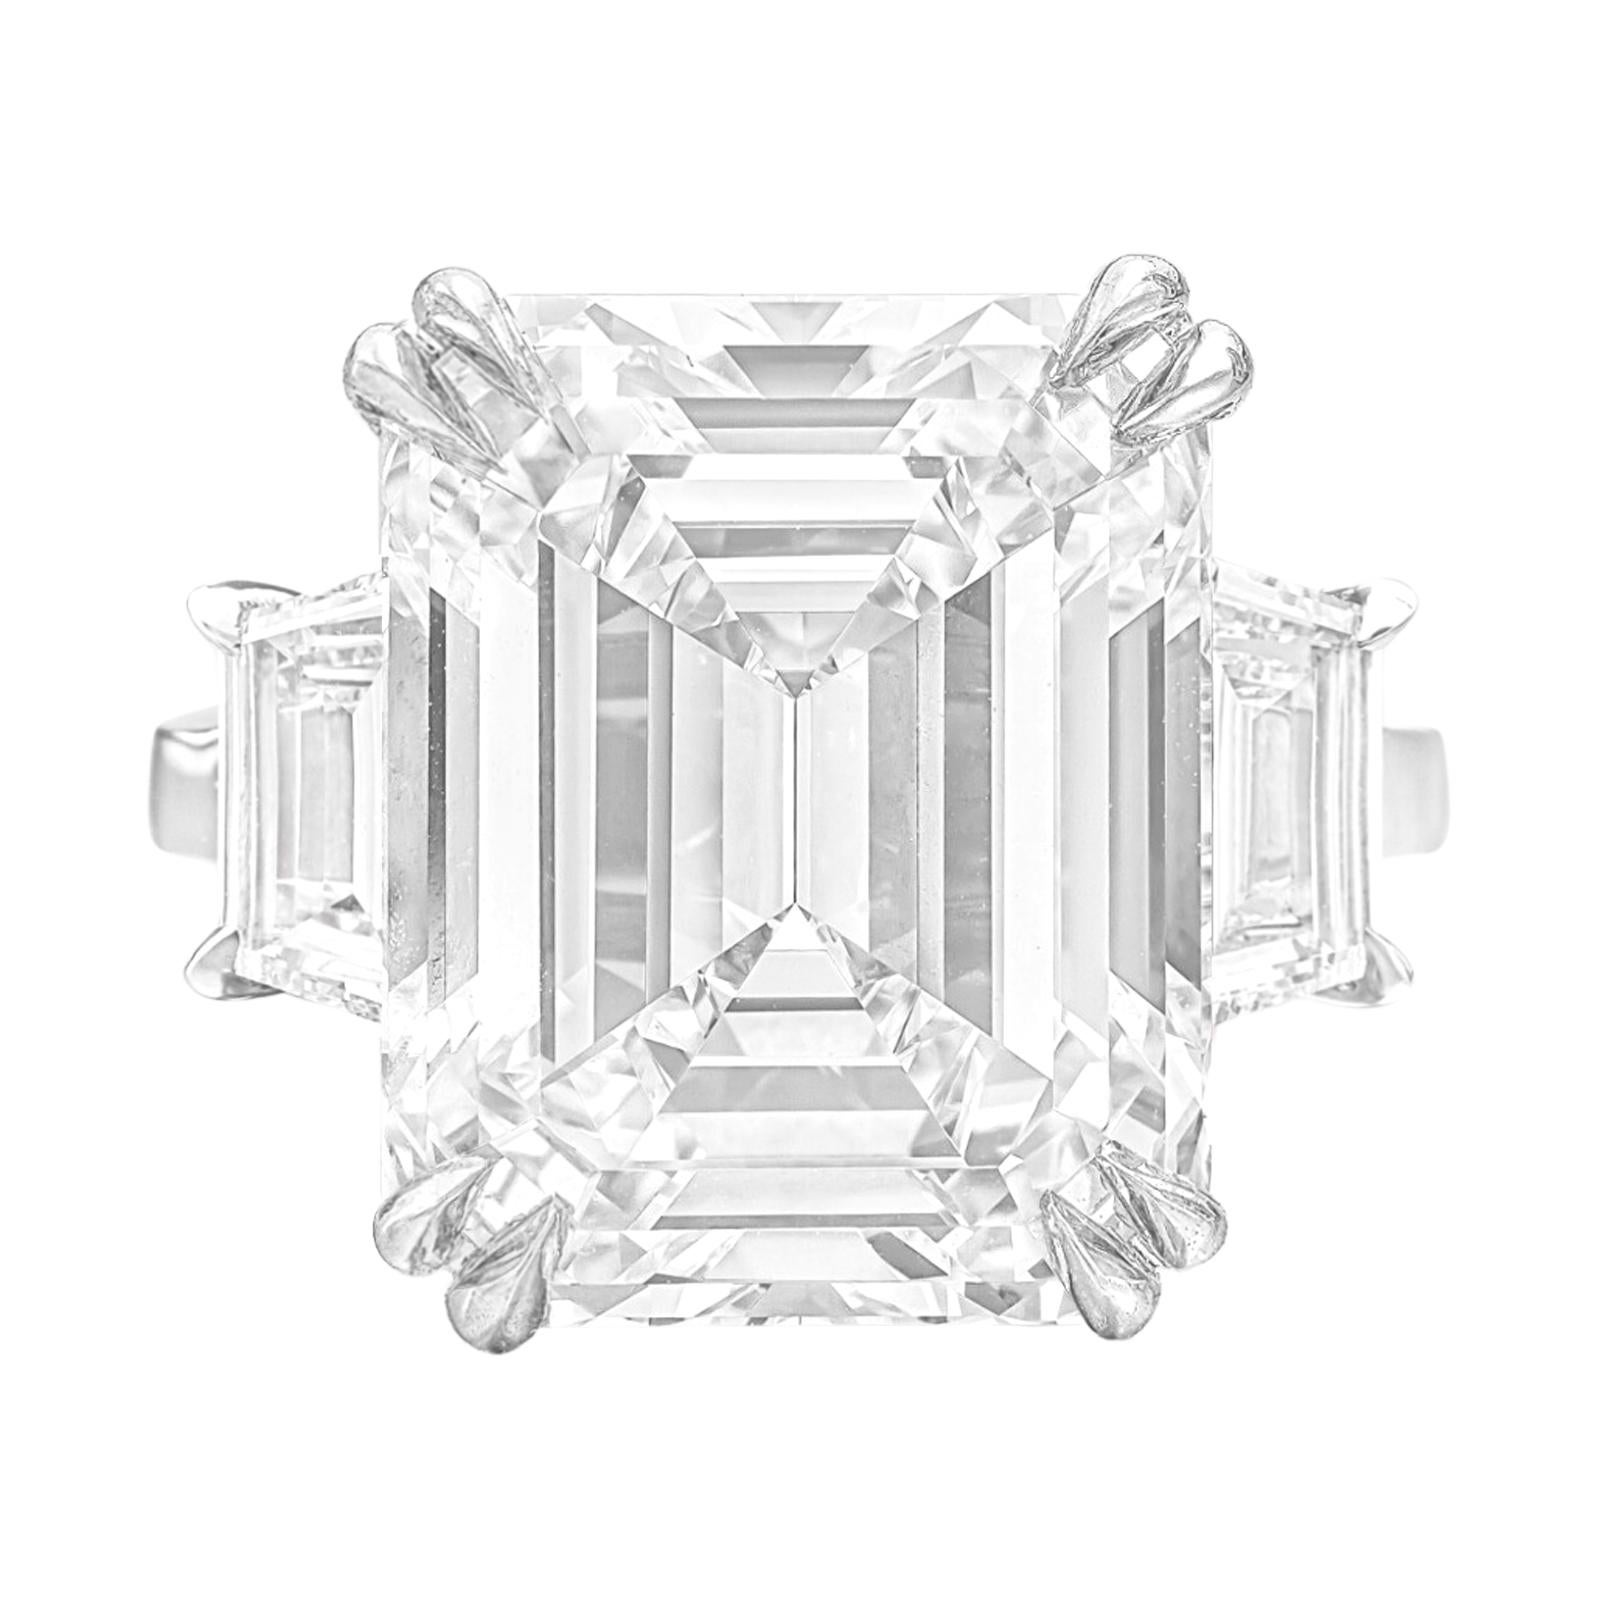 Cette remarquable bague met en valeur un époustouflant diamant de 6 carats de taille émeraude, gracieusement serti dans un exquis anneau d'or blanc 18 carats orné de diamants de taille trapézoïdale. Le diamant central, une pierre précieuse de 6